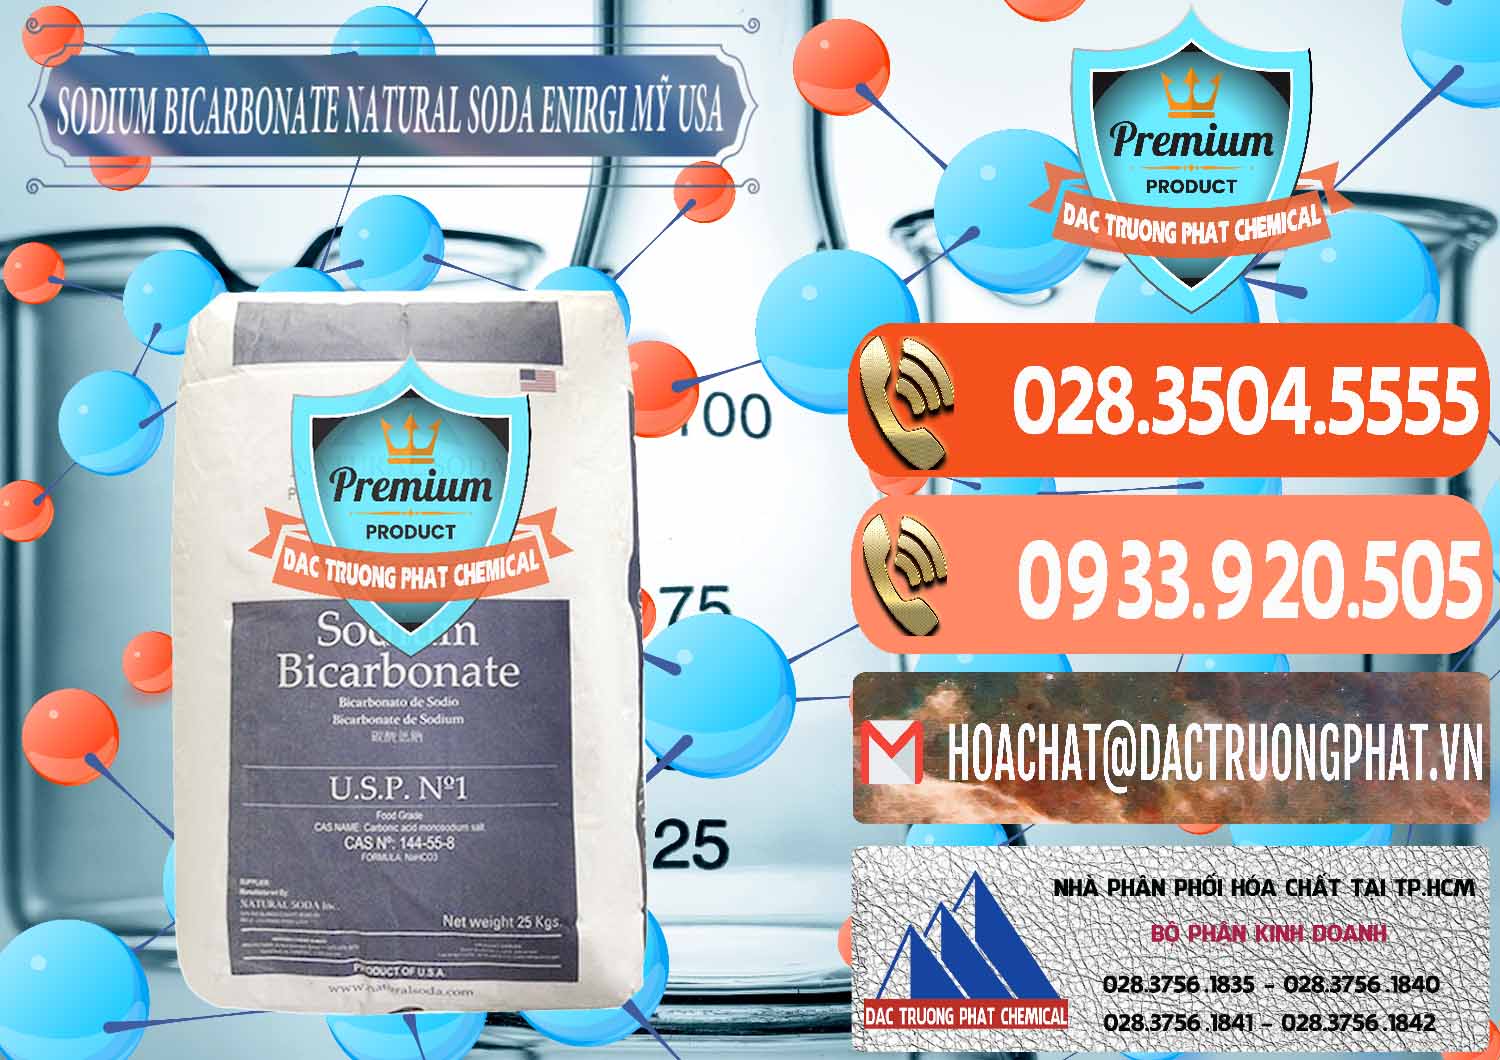 Nơi chuyên cung ứng - bán Sodium Bicarbonate – Bicar NaHCO3 Food Grade Natural Soda Enirgi Mỹ USA - 0257 - Nơi chuyên cung cấp _ kinh doanh hóa chất tại TP.HCM - hoachatmientay.com